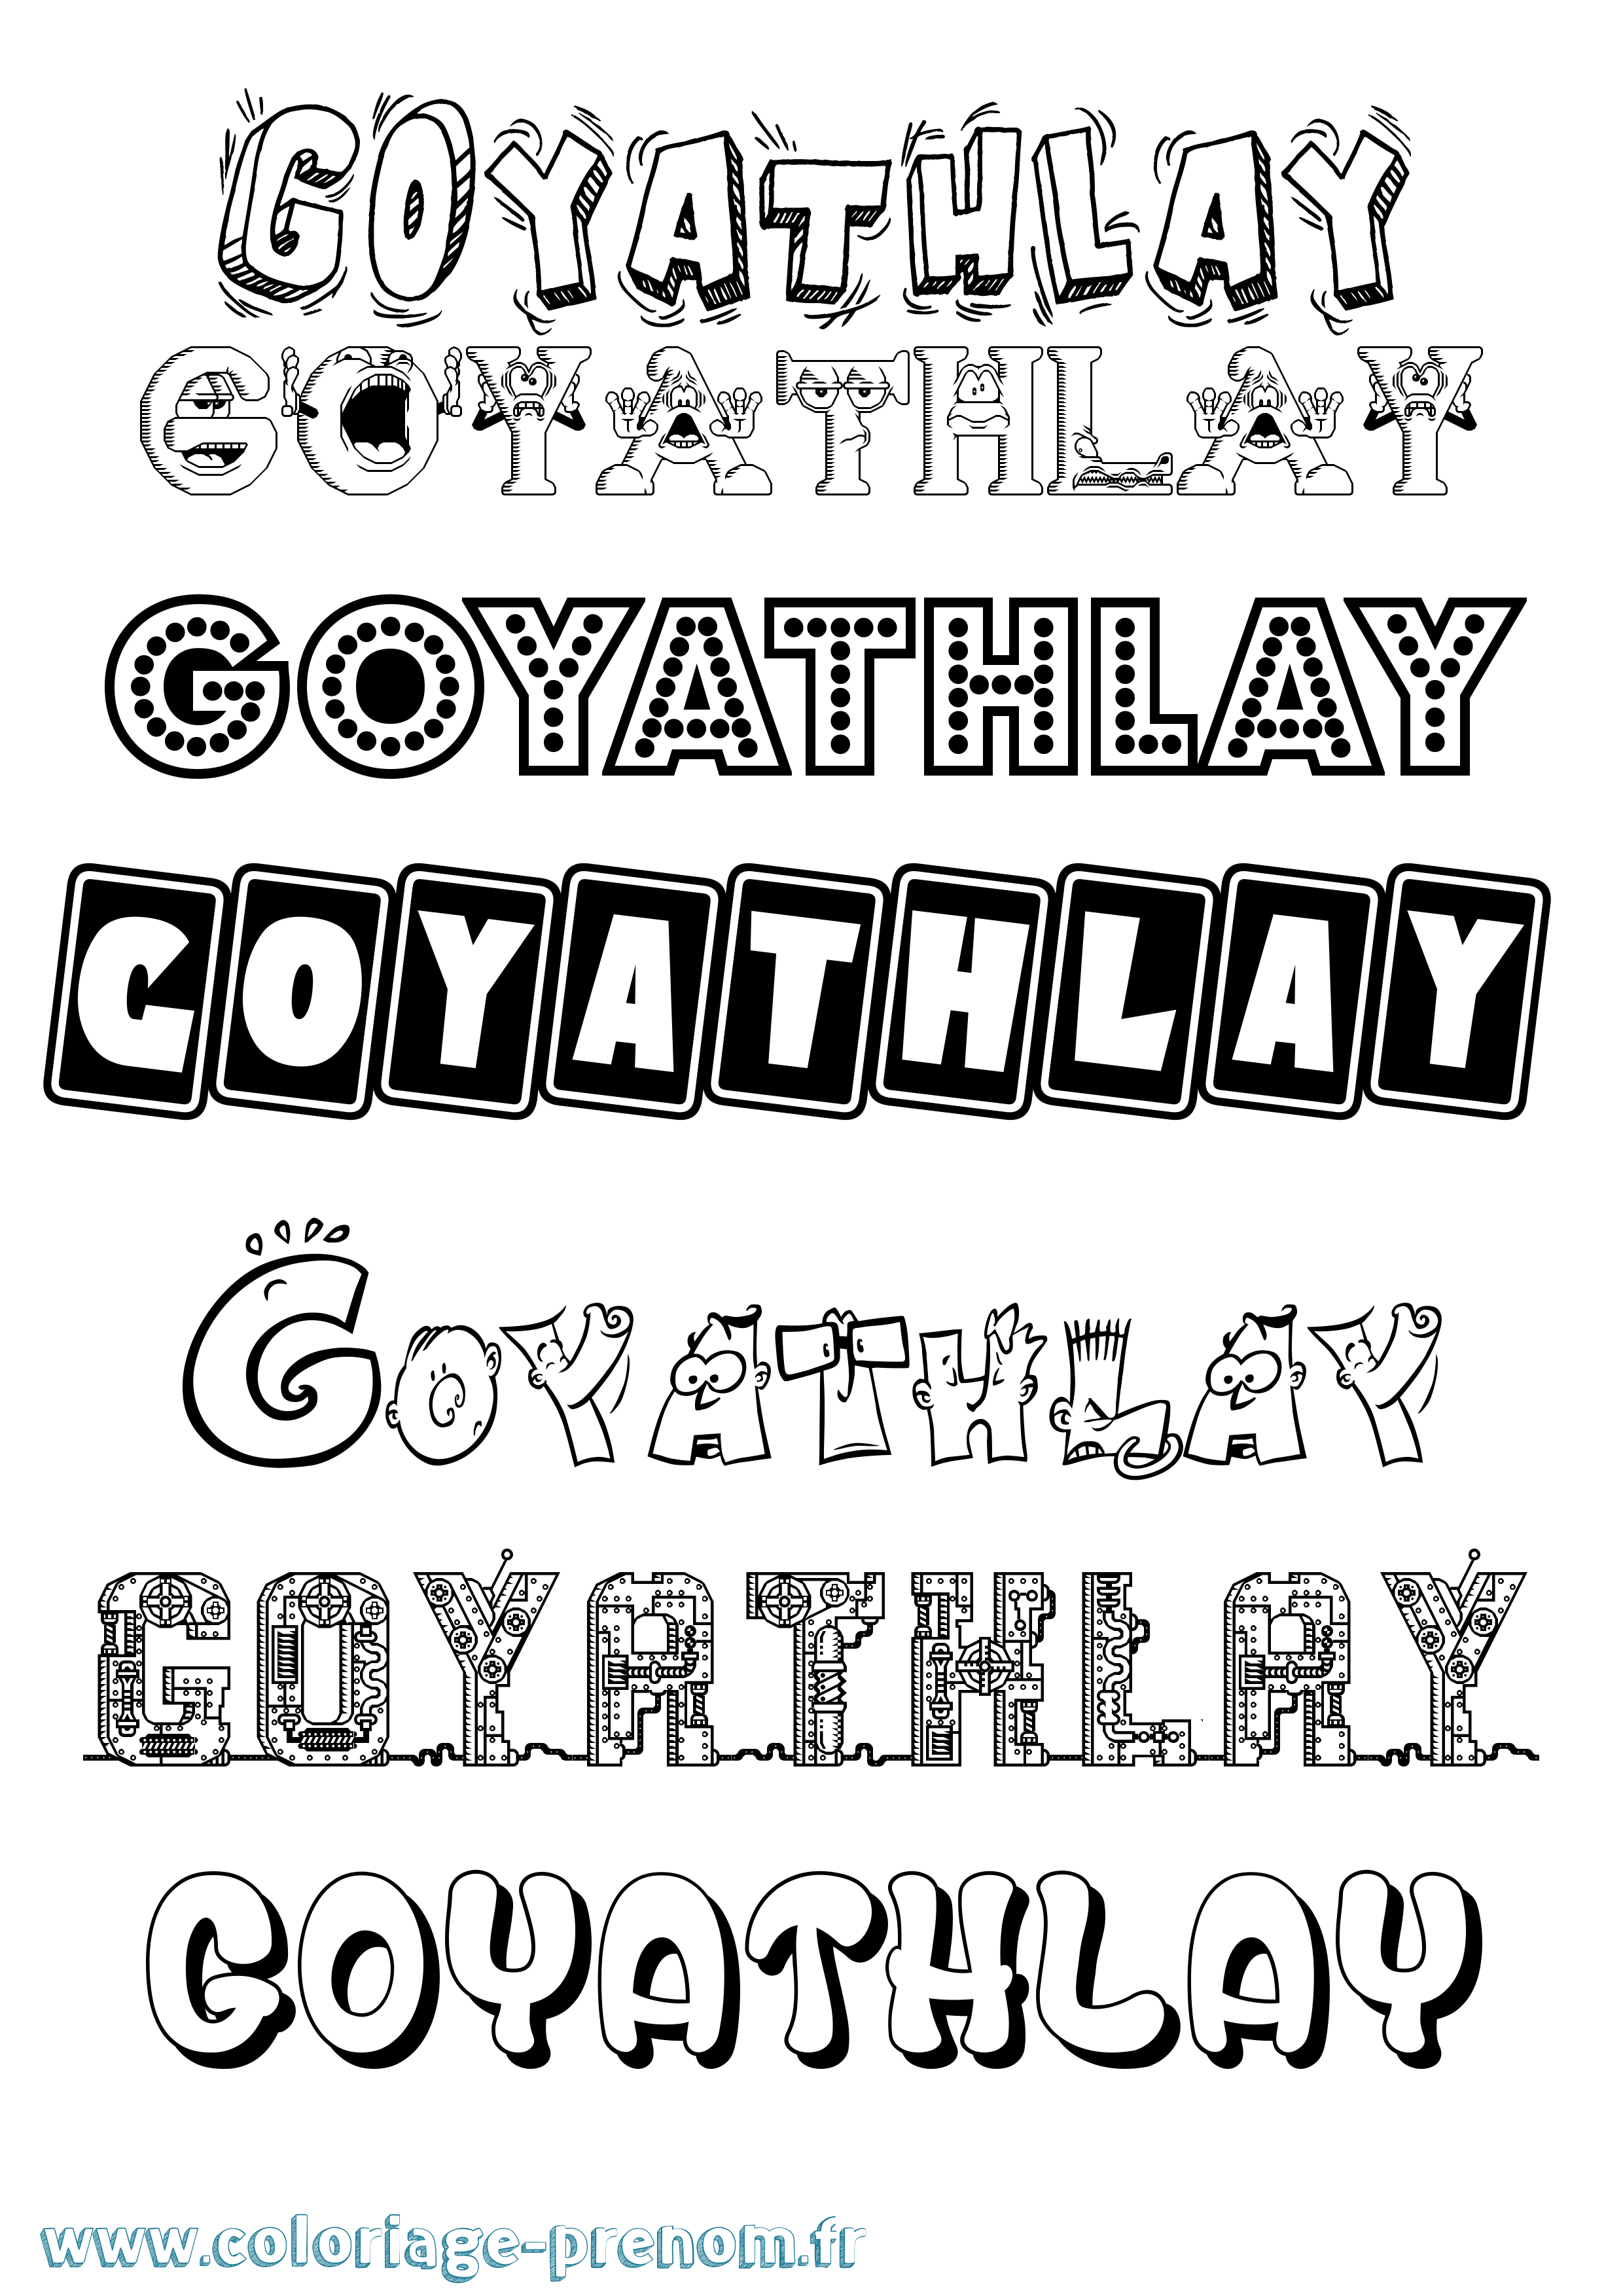 Coloriage prénom Goyathlay Fun